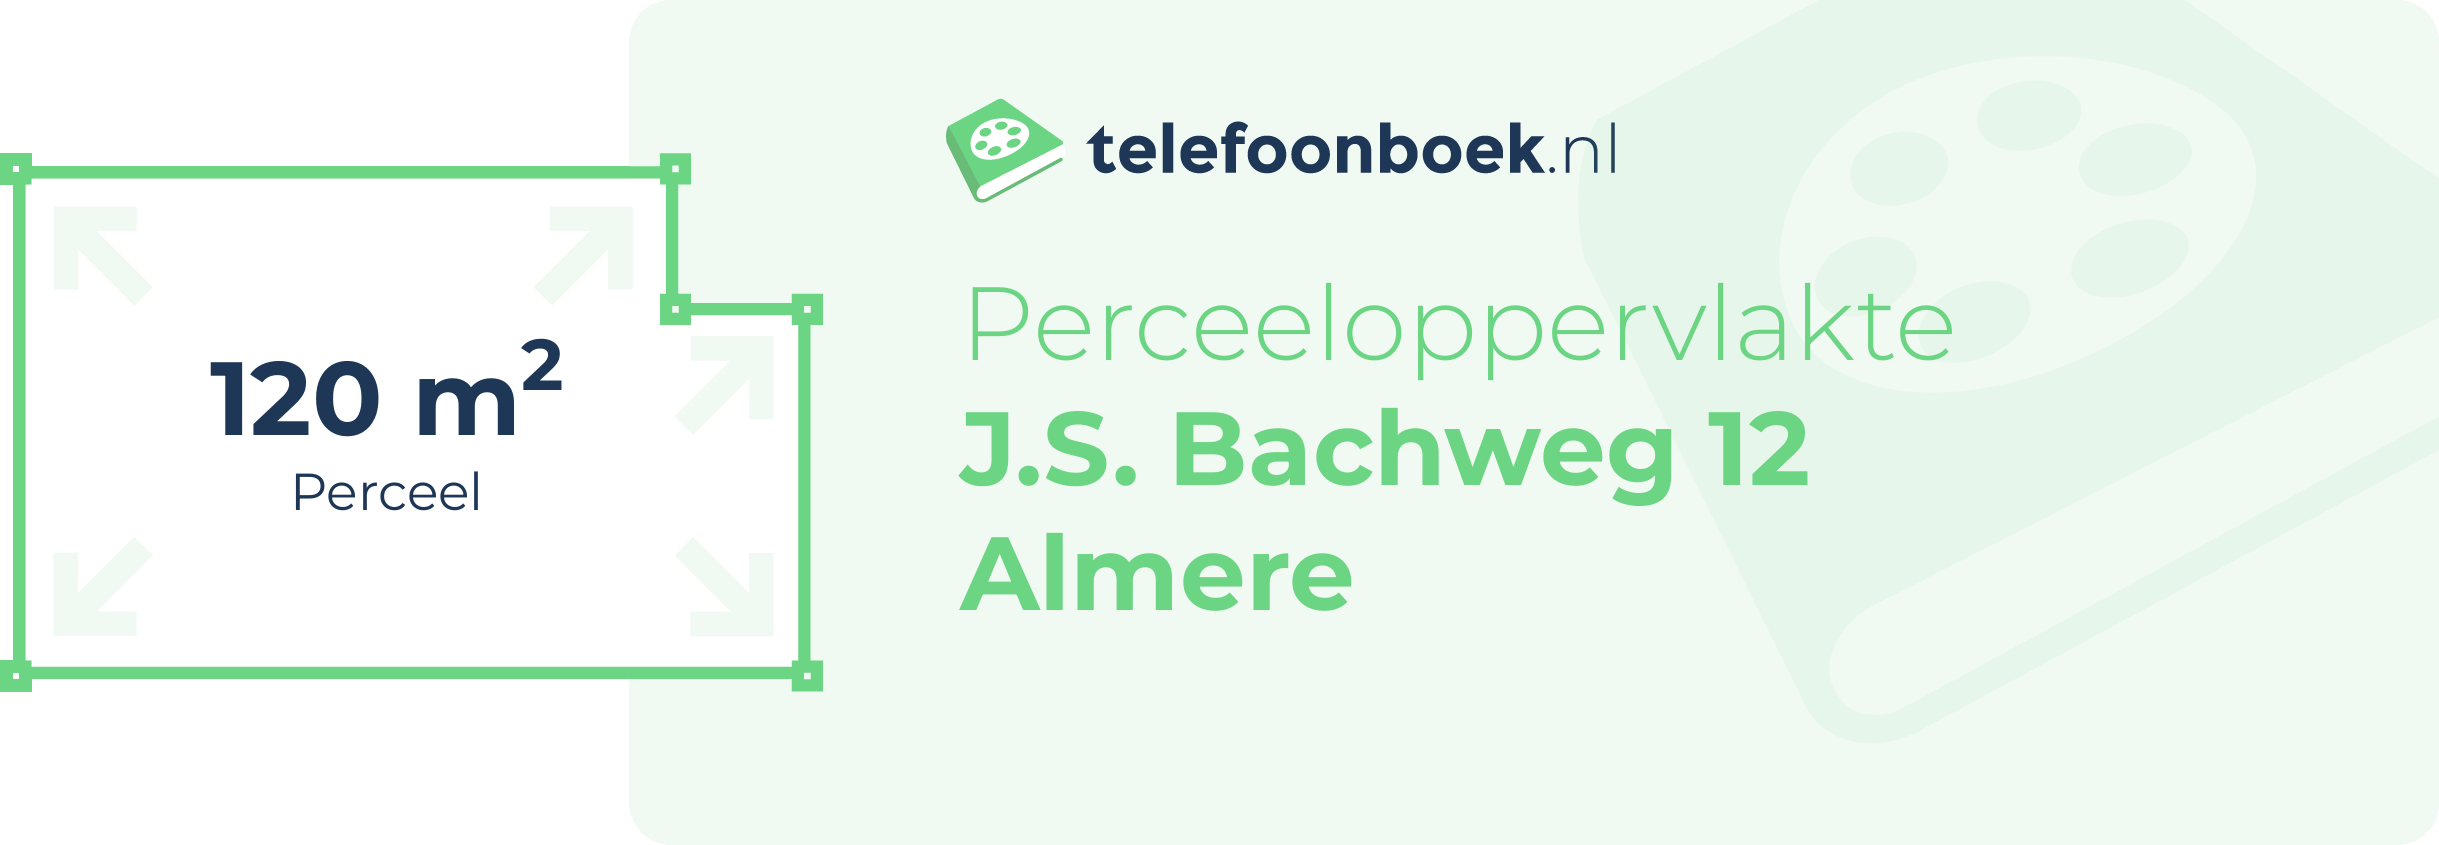 Perceeloppervlakte J.S. Bachweg 12 Almere